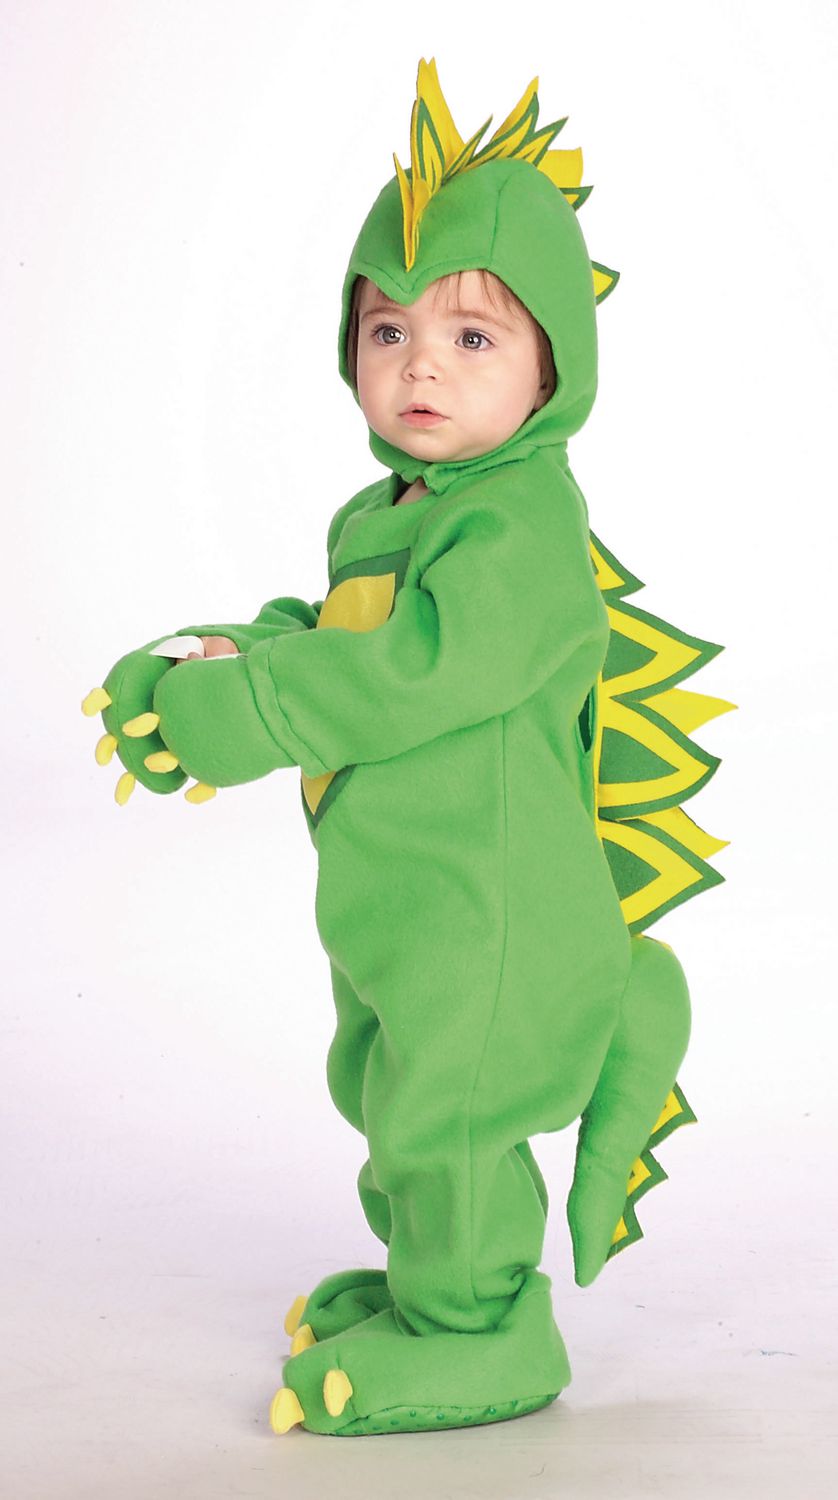 Déguisement dinosaure pelucheux - 2/3 ans - Costumes bébé jusqu'à 3 ans -  Creavea